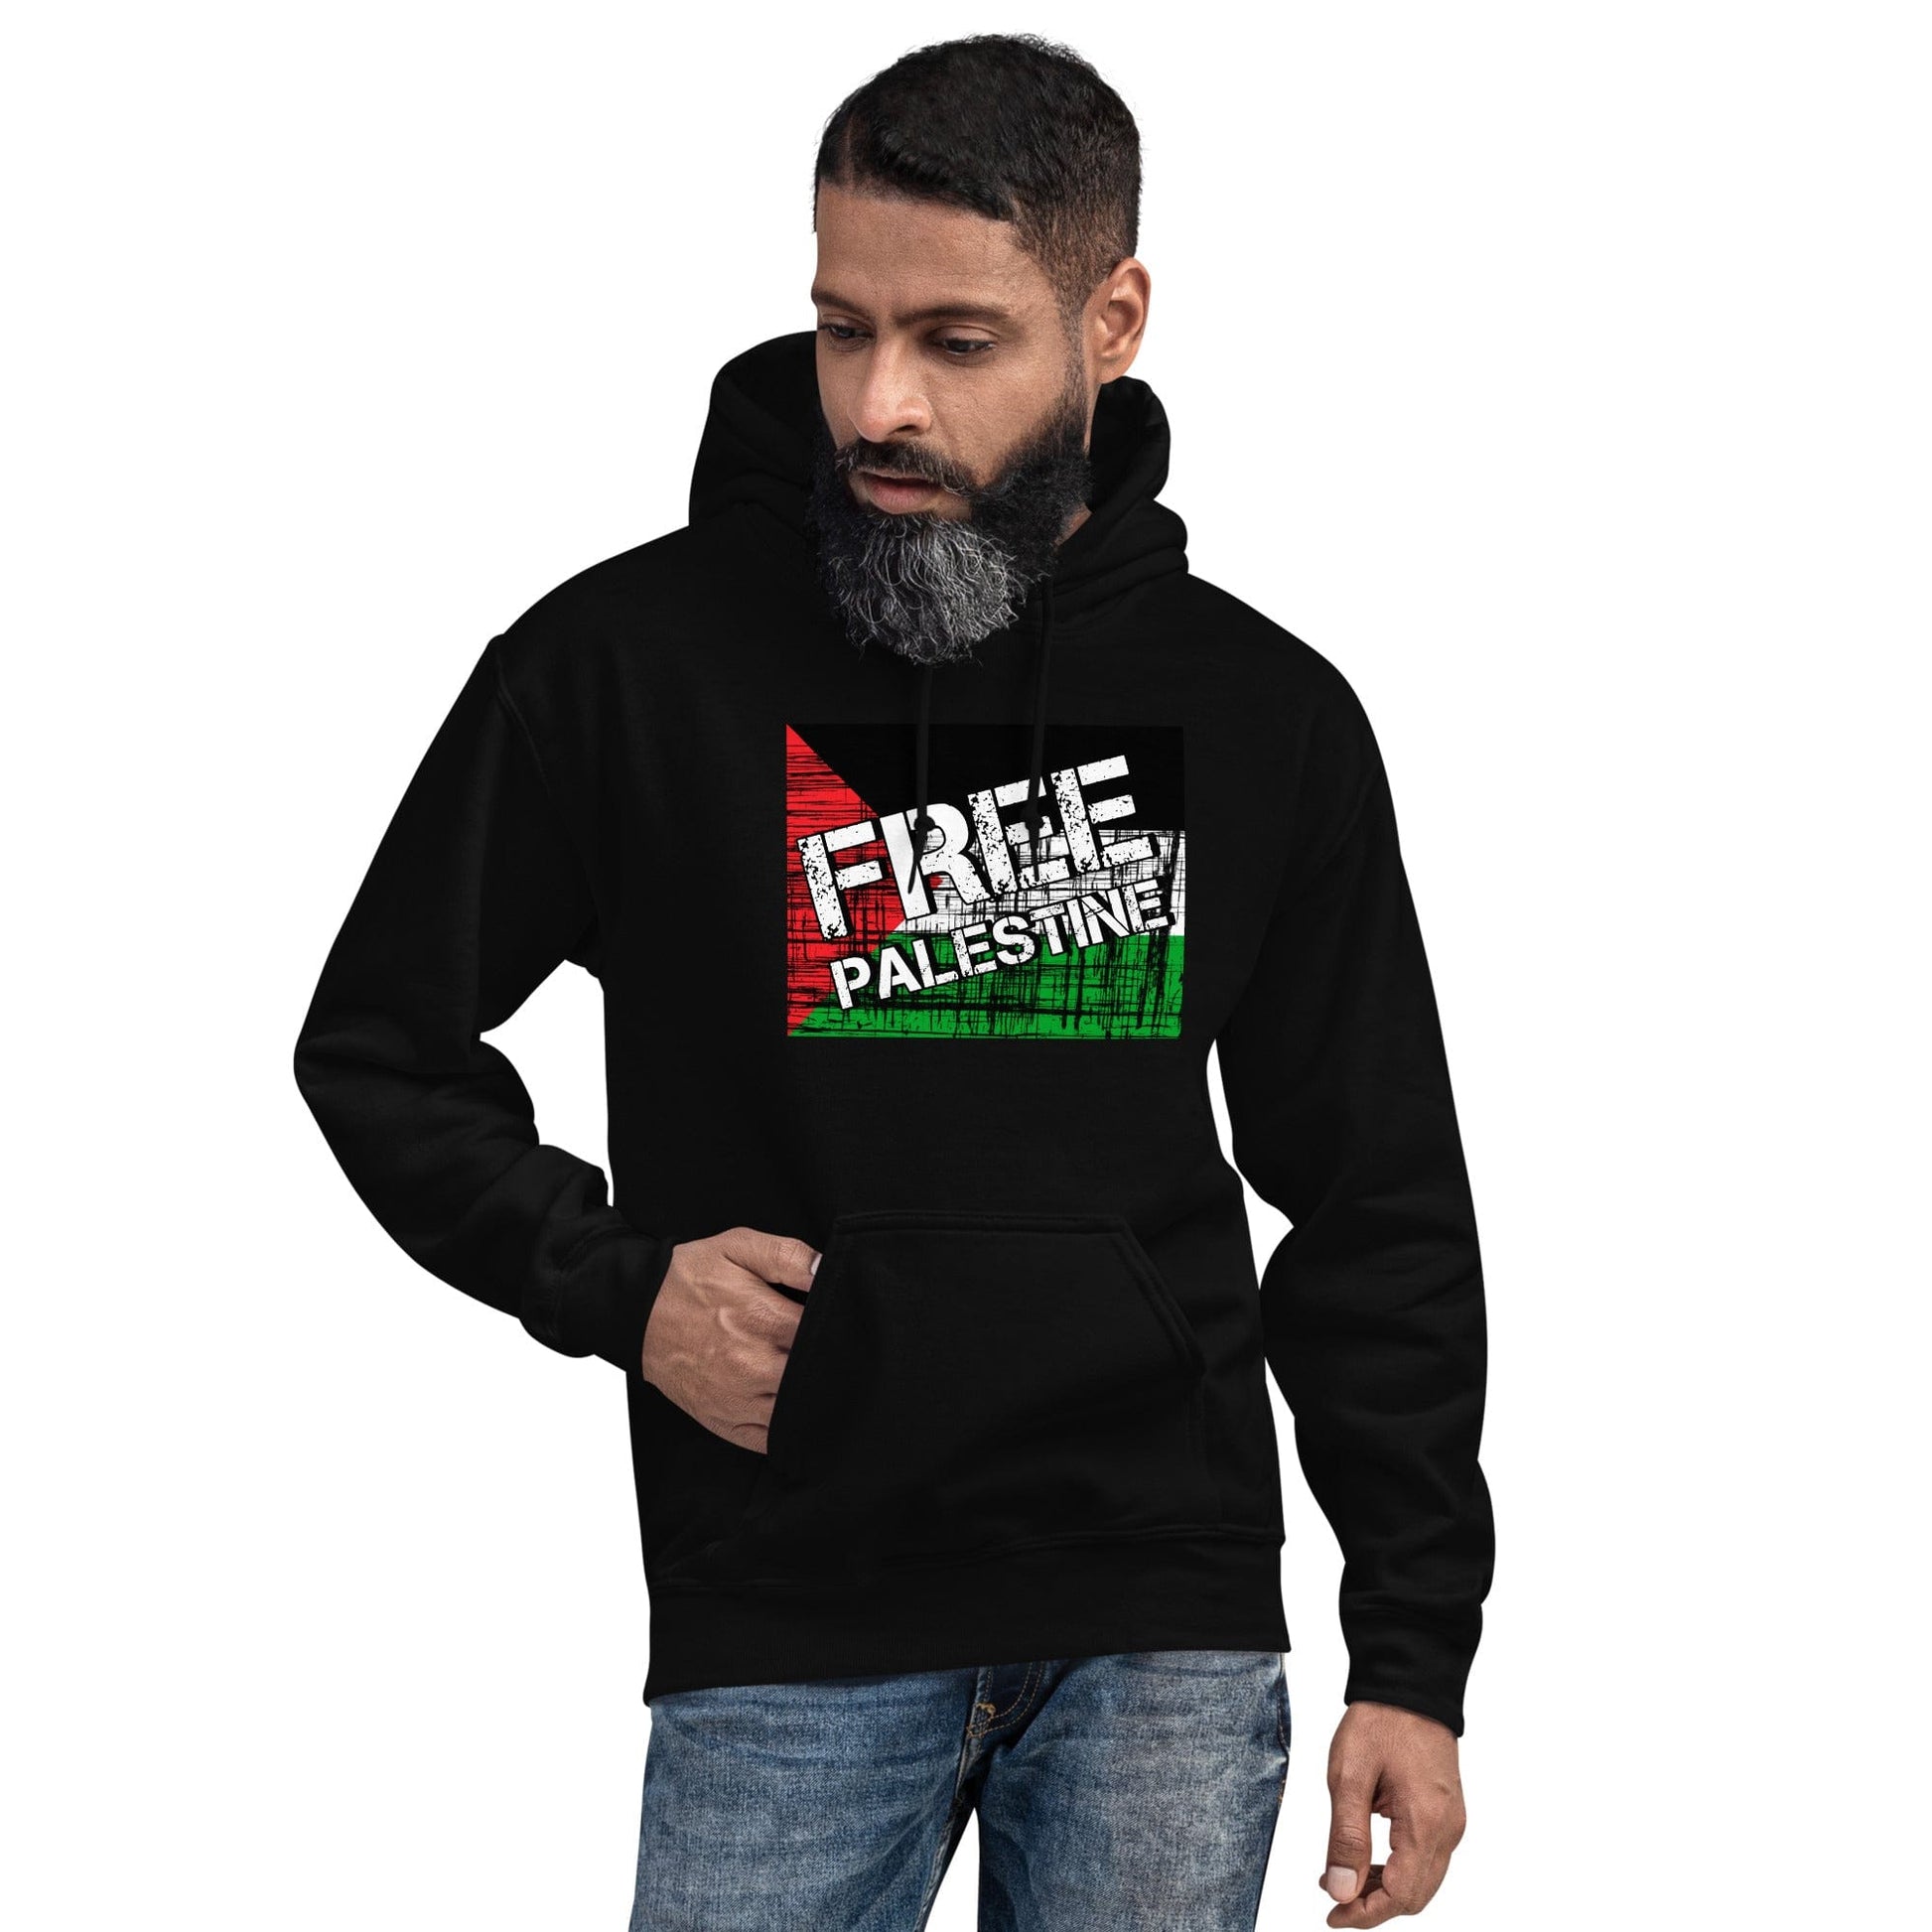 Free Palestine Unisex Hoodie